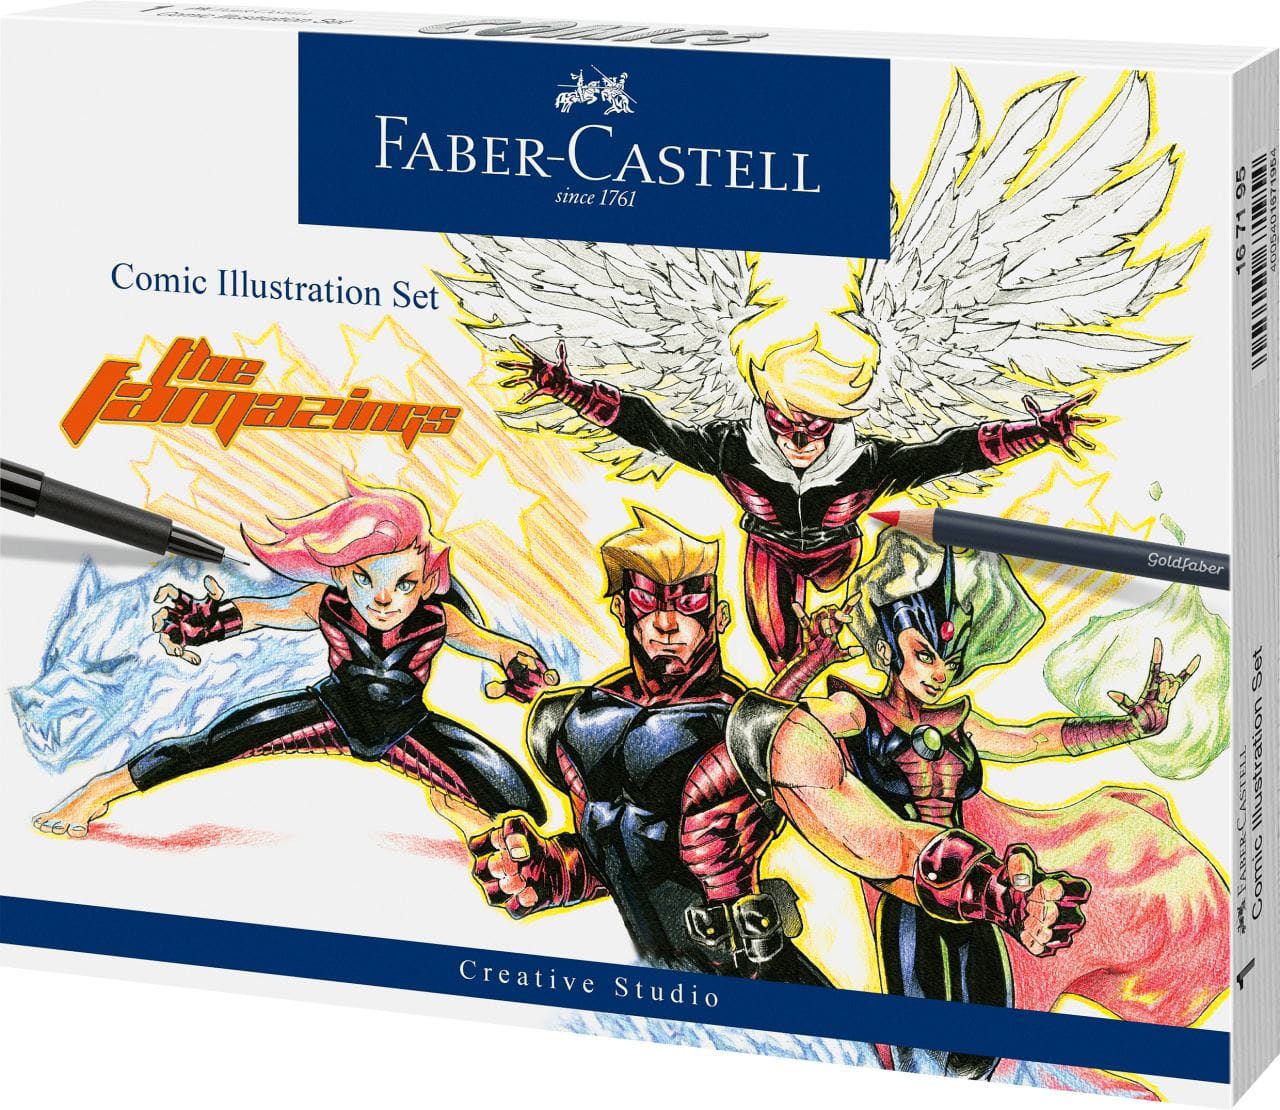 Faber-Castell - Comic Illustration set, 15 pieces